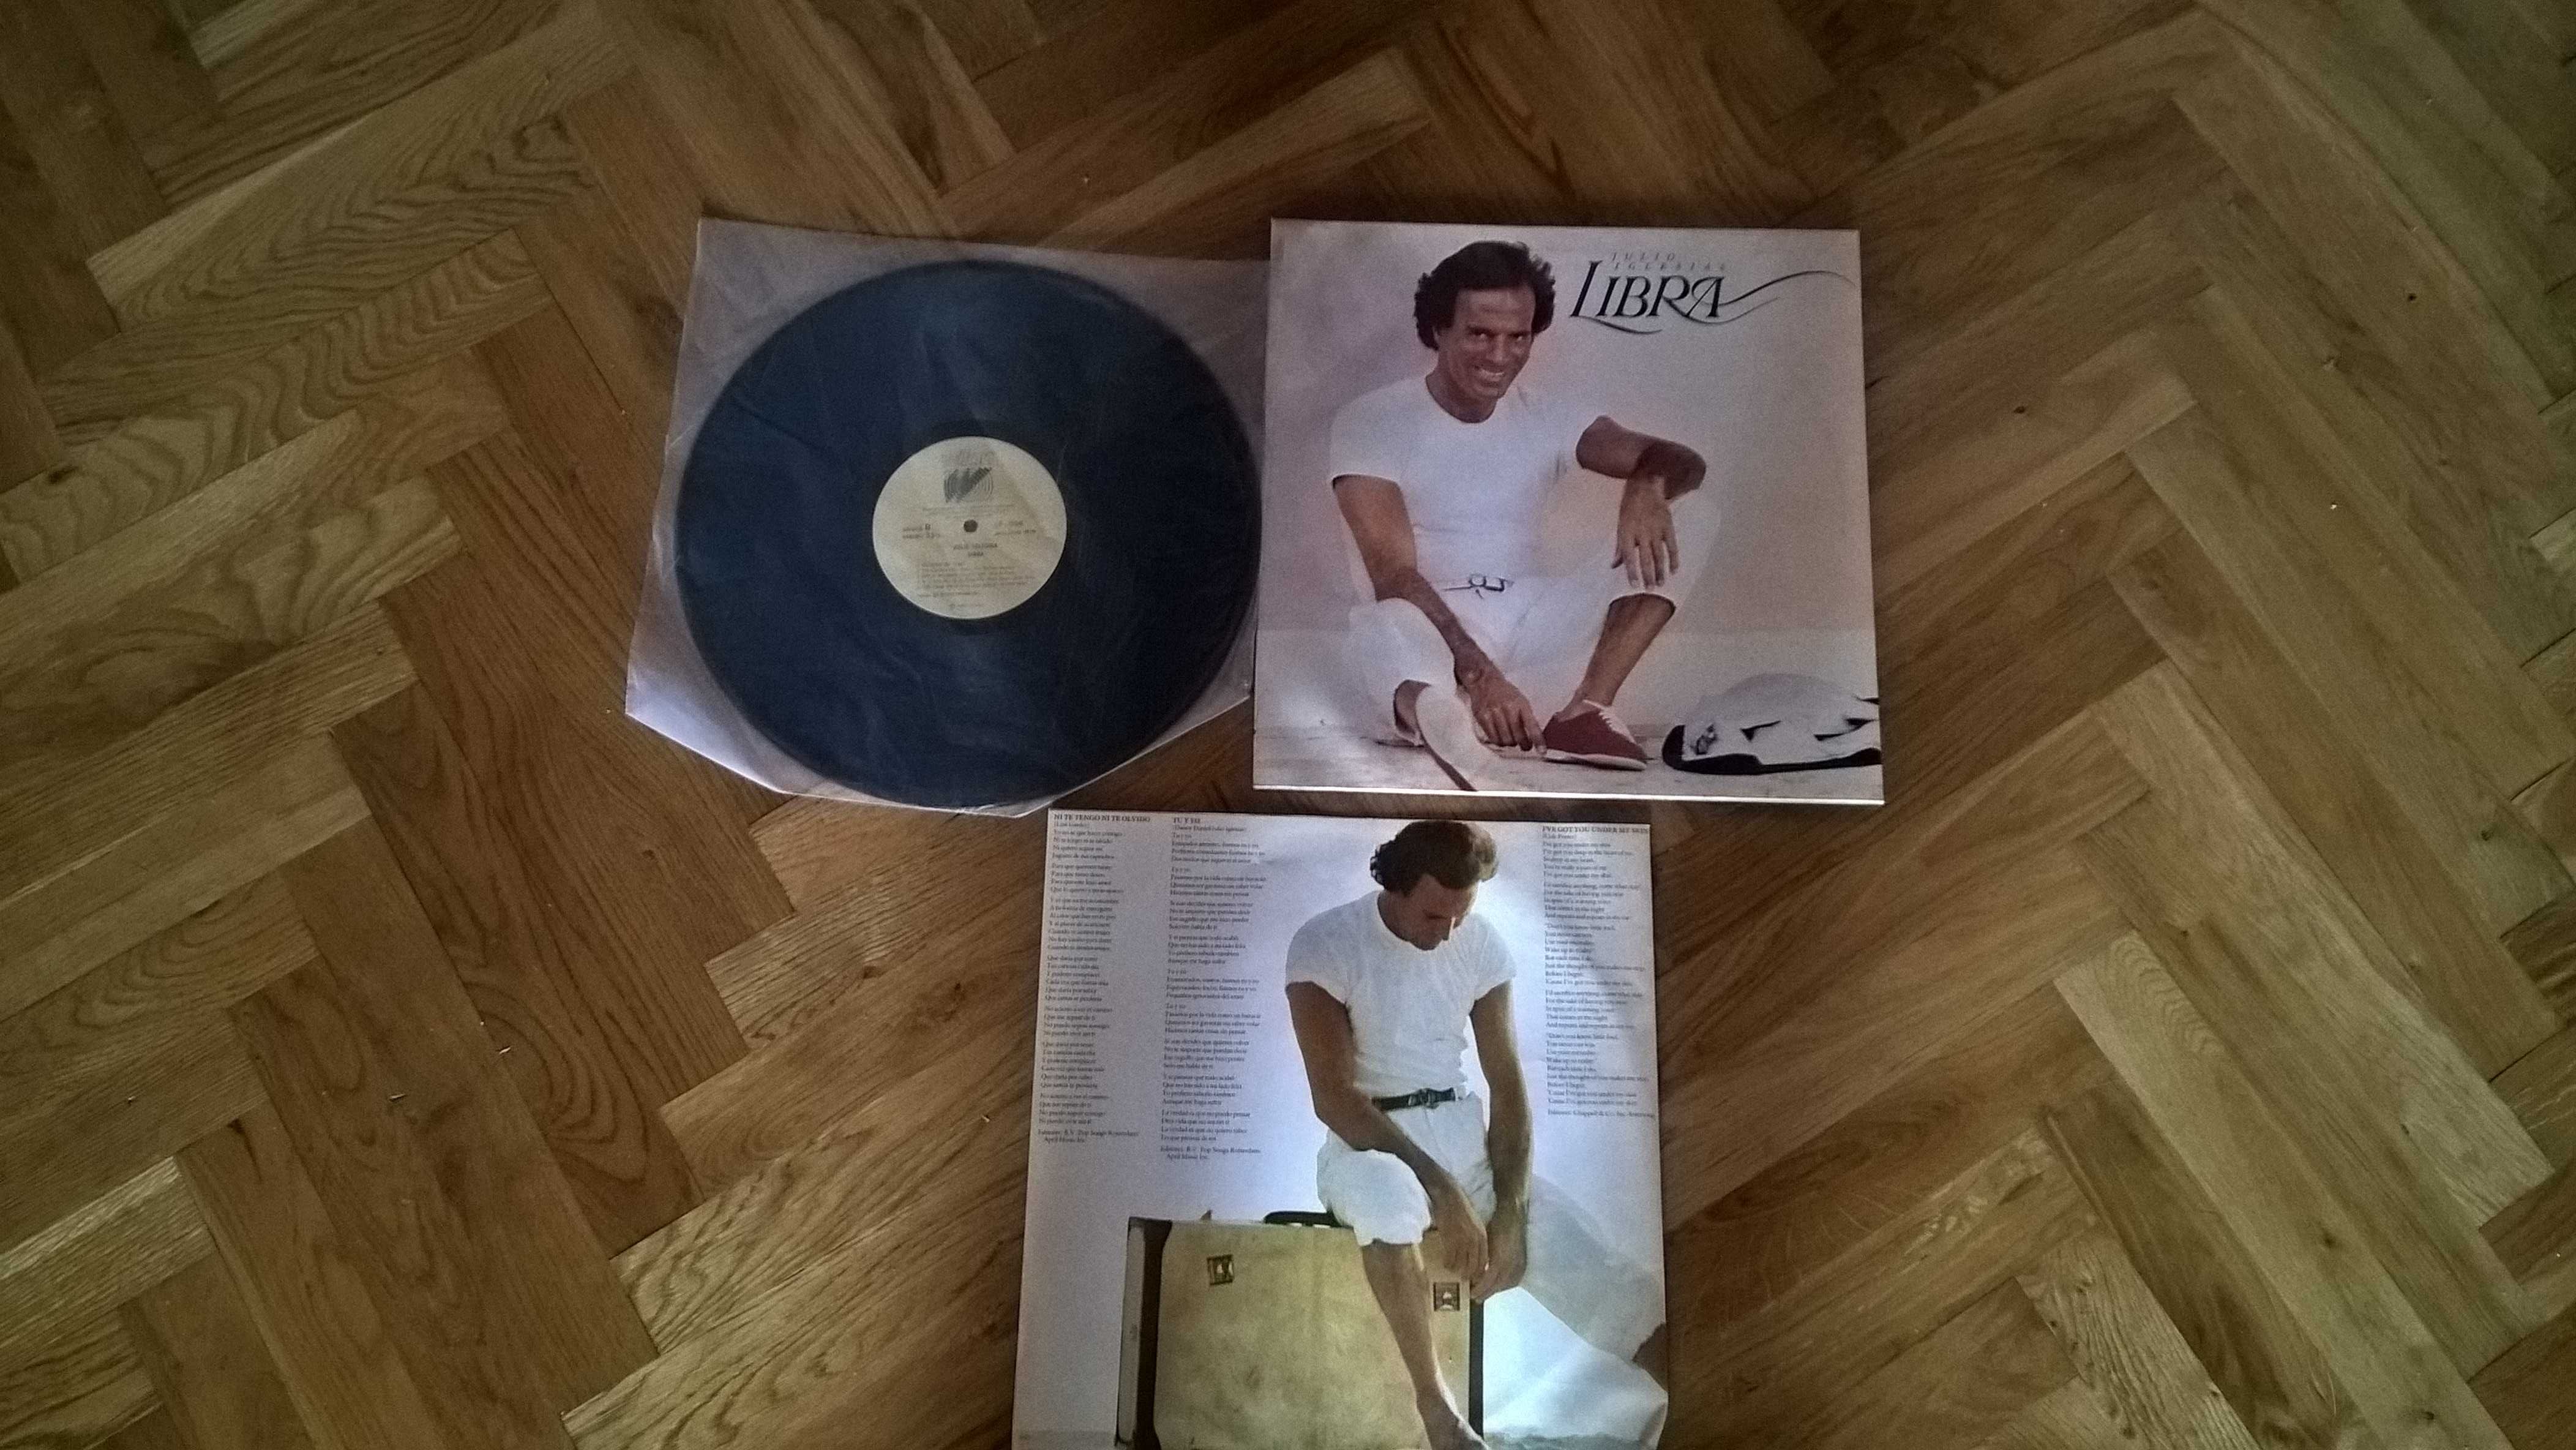 płyta winylowa  Julio Iglesias  Libra  1986r  Stan idealny